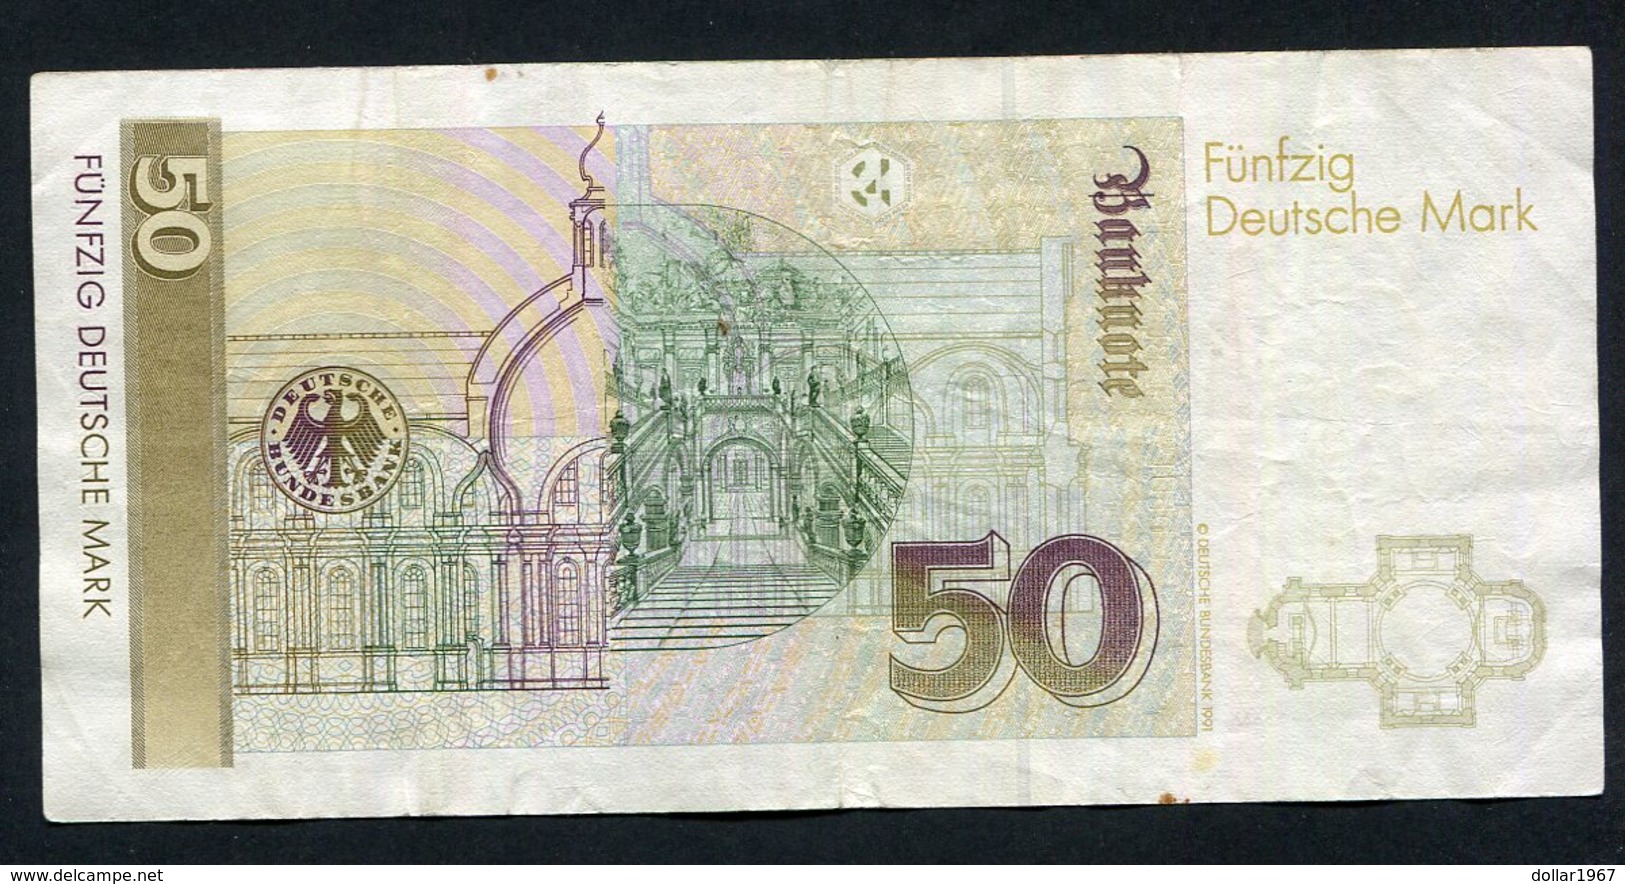 50 Dm / Deutsche Mark / Bundesbanknote 1-8-1991 (AL) - See The 2 Scans For Condition.(Originalscan ) - 50 DM